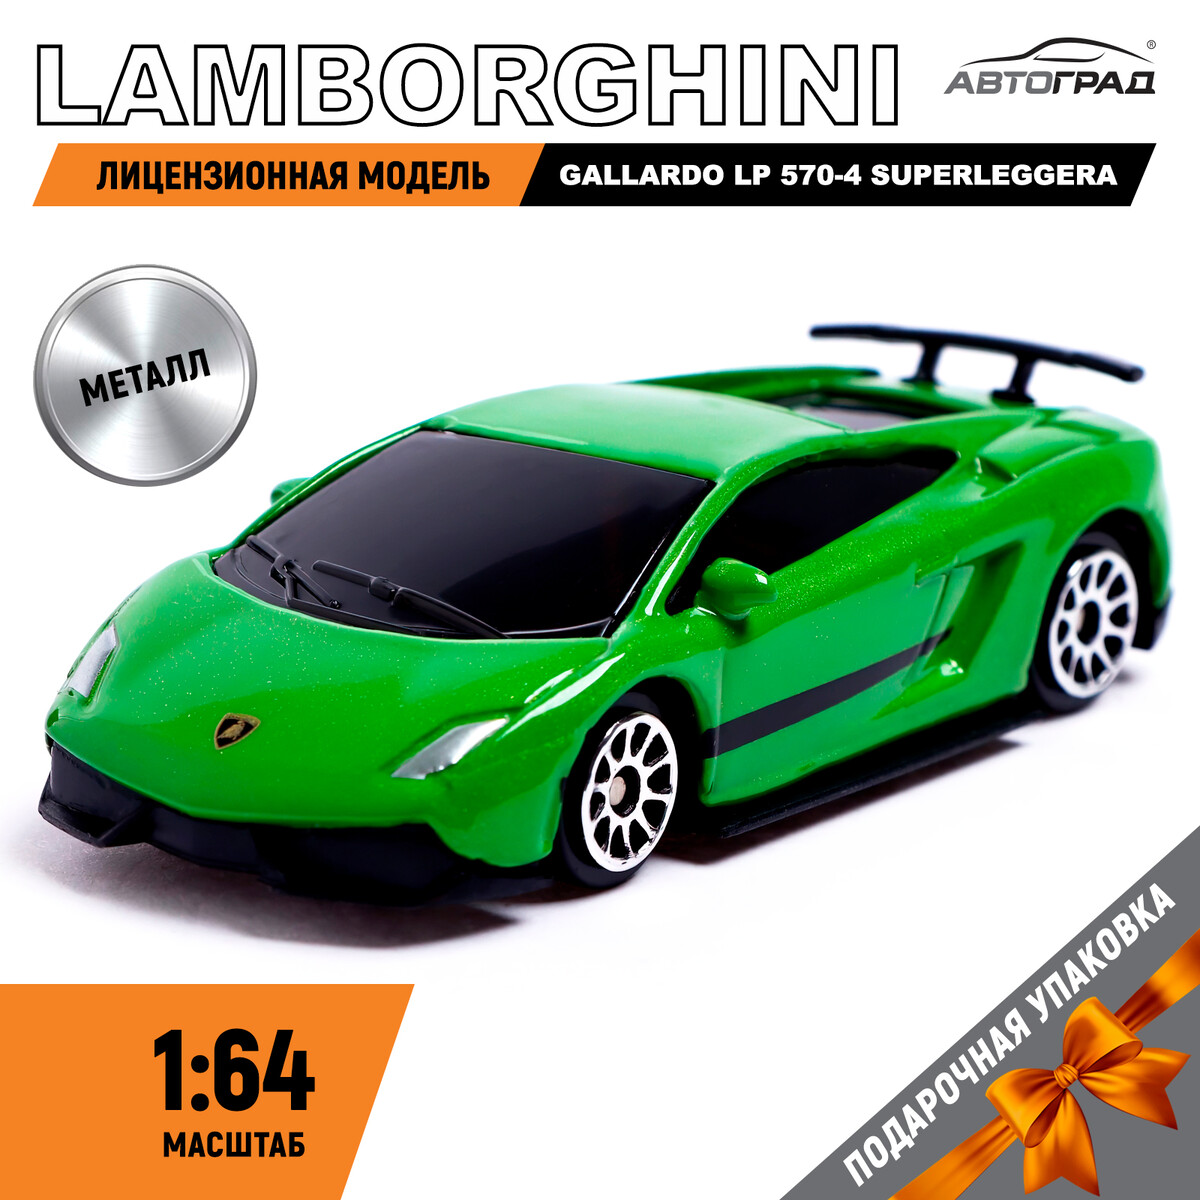 Машина металлическая lamborghini gallardo lp 570-4 superleggera, 1:64, цвет зеленый машинка металлическая автопанорама 1 24 lamborghini gallardo lp560 4 зеленый своб ход